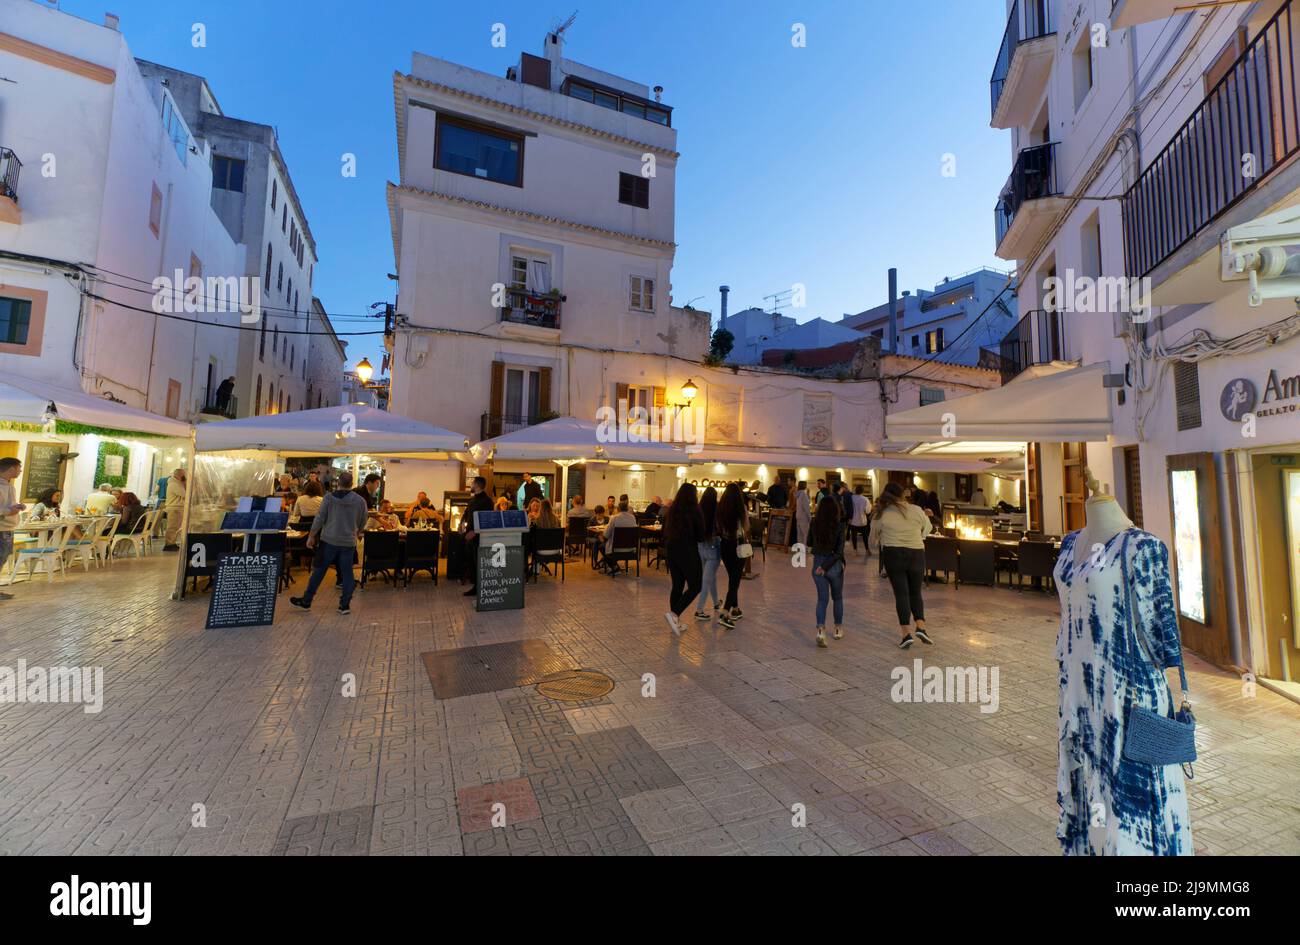 Ibiza-Stadt, Hafen, Promenade, Restaurants, Eivissa, Balearen, Spanien, Europa Stock Photo